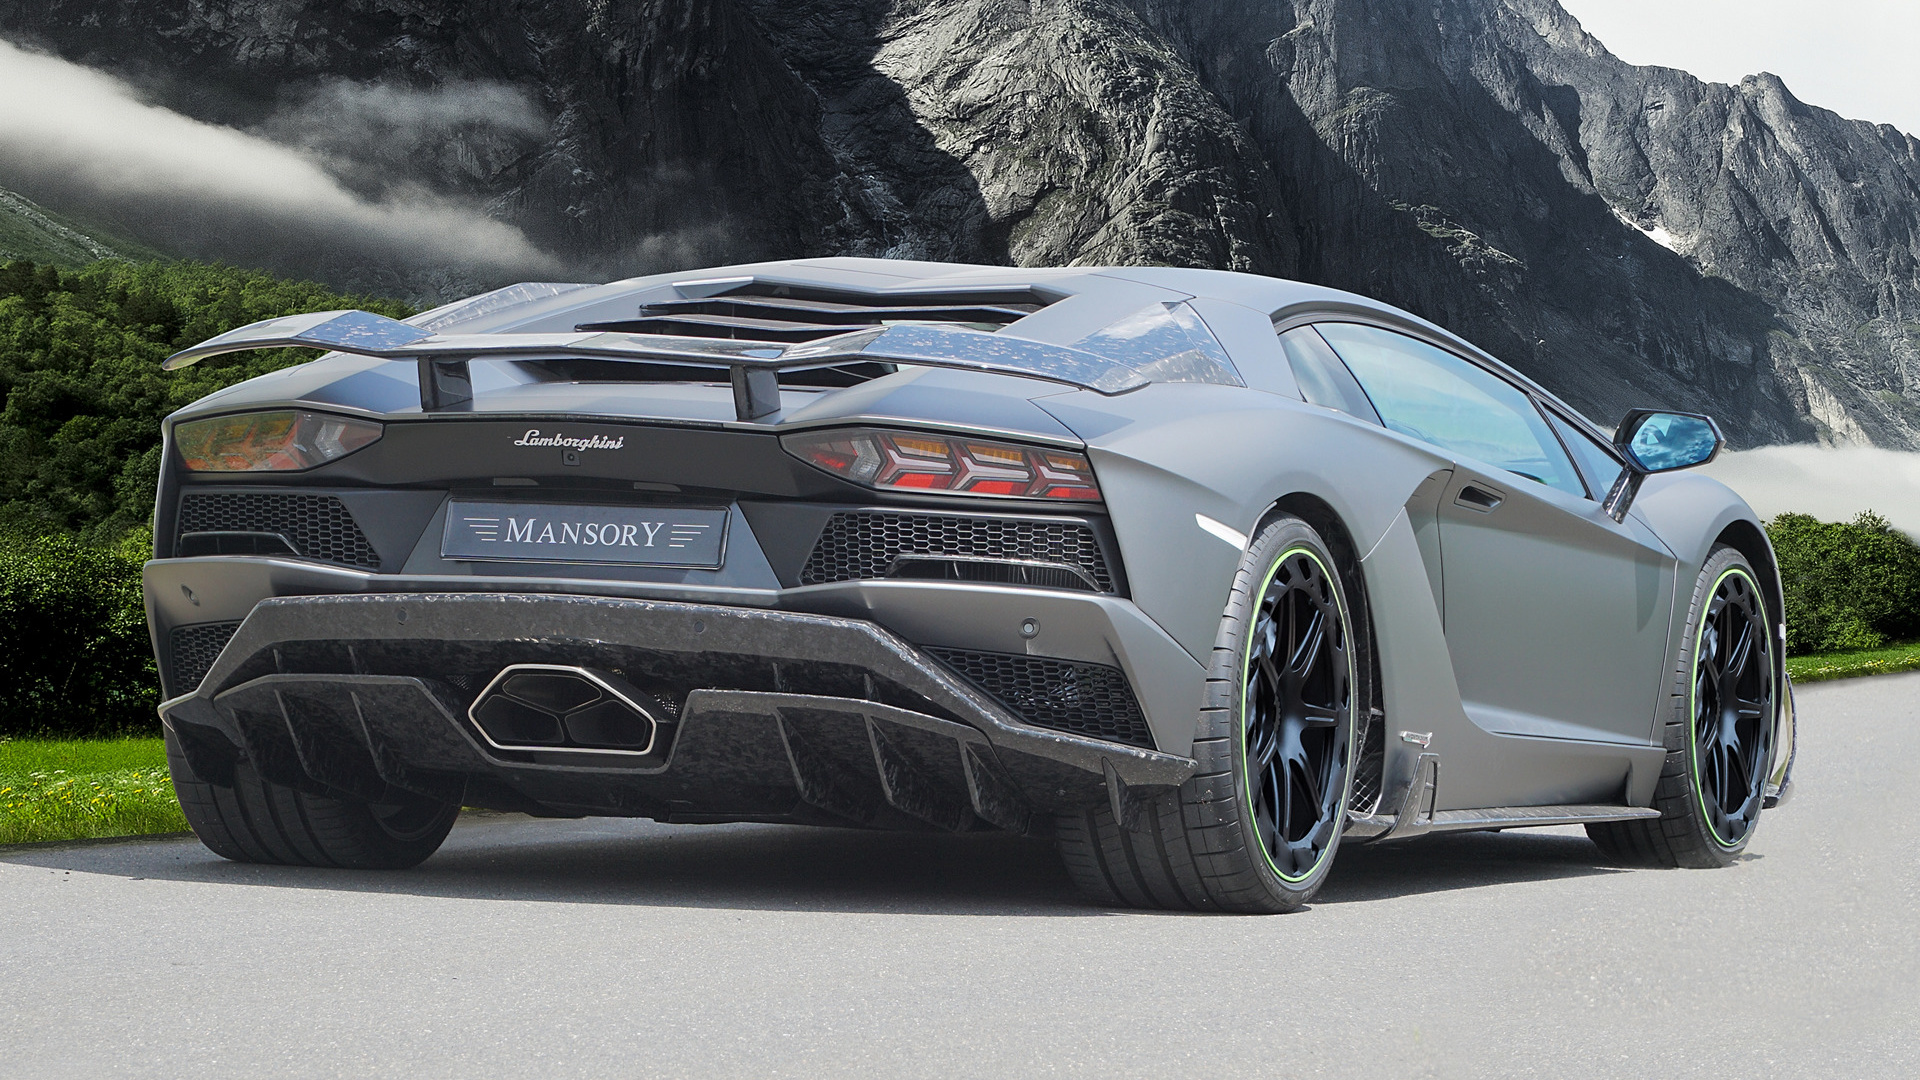 Télécharger des fonds d'écran Lamborghini Aventador S Par Mansory HD